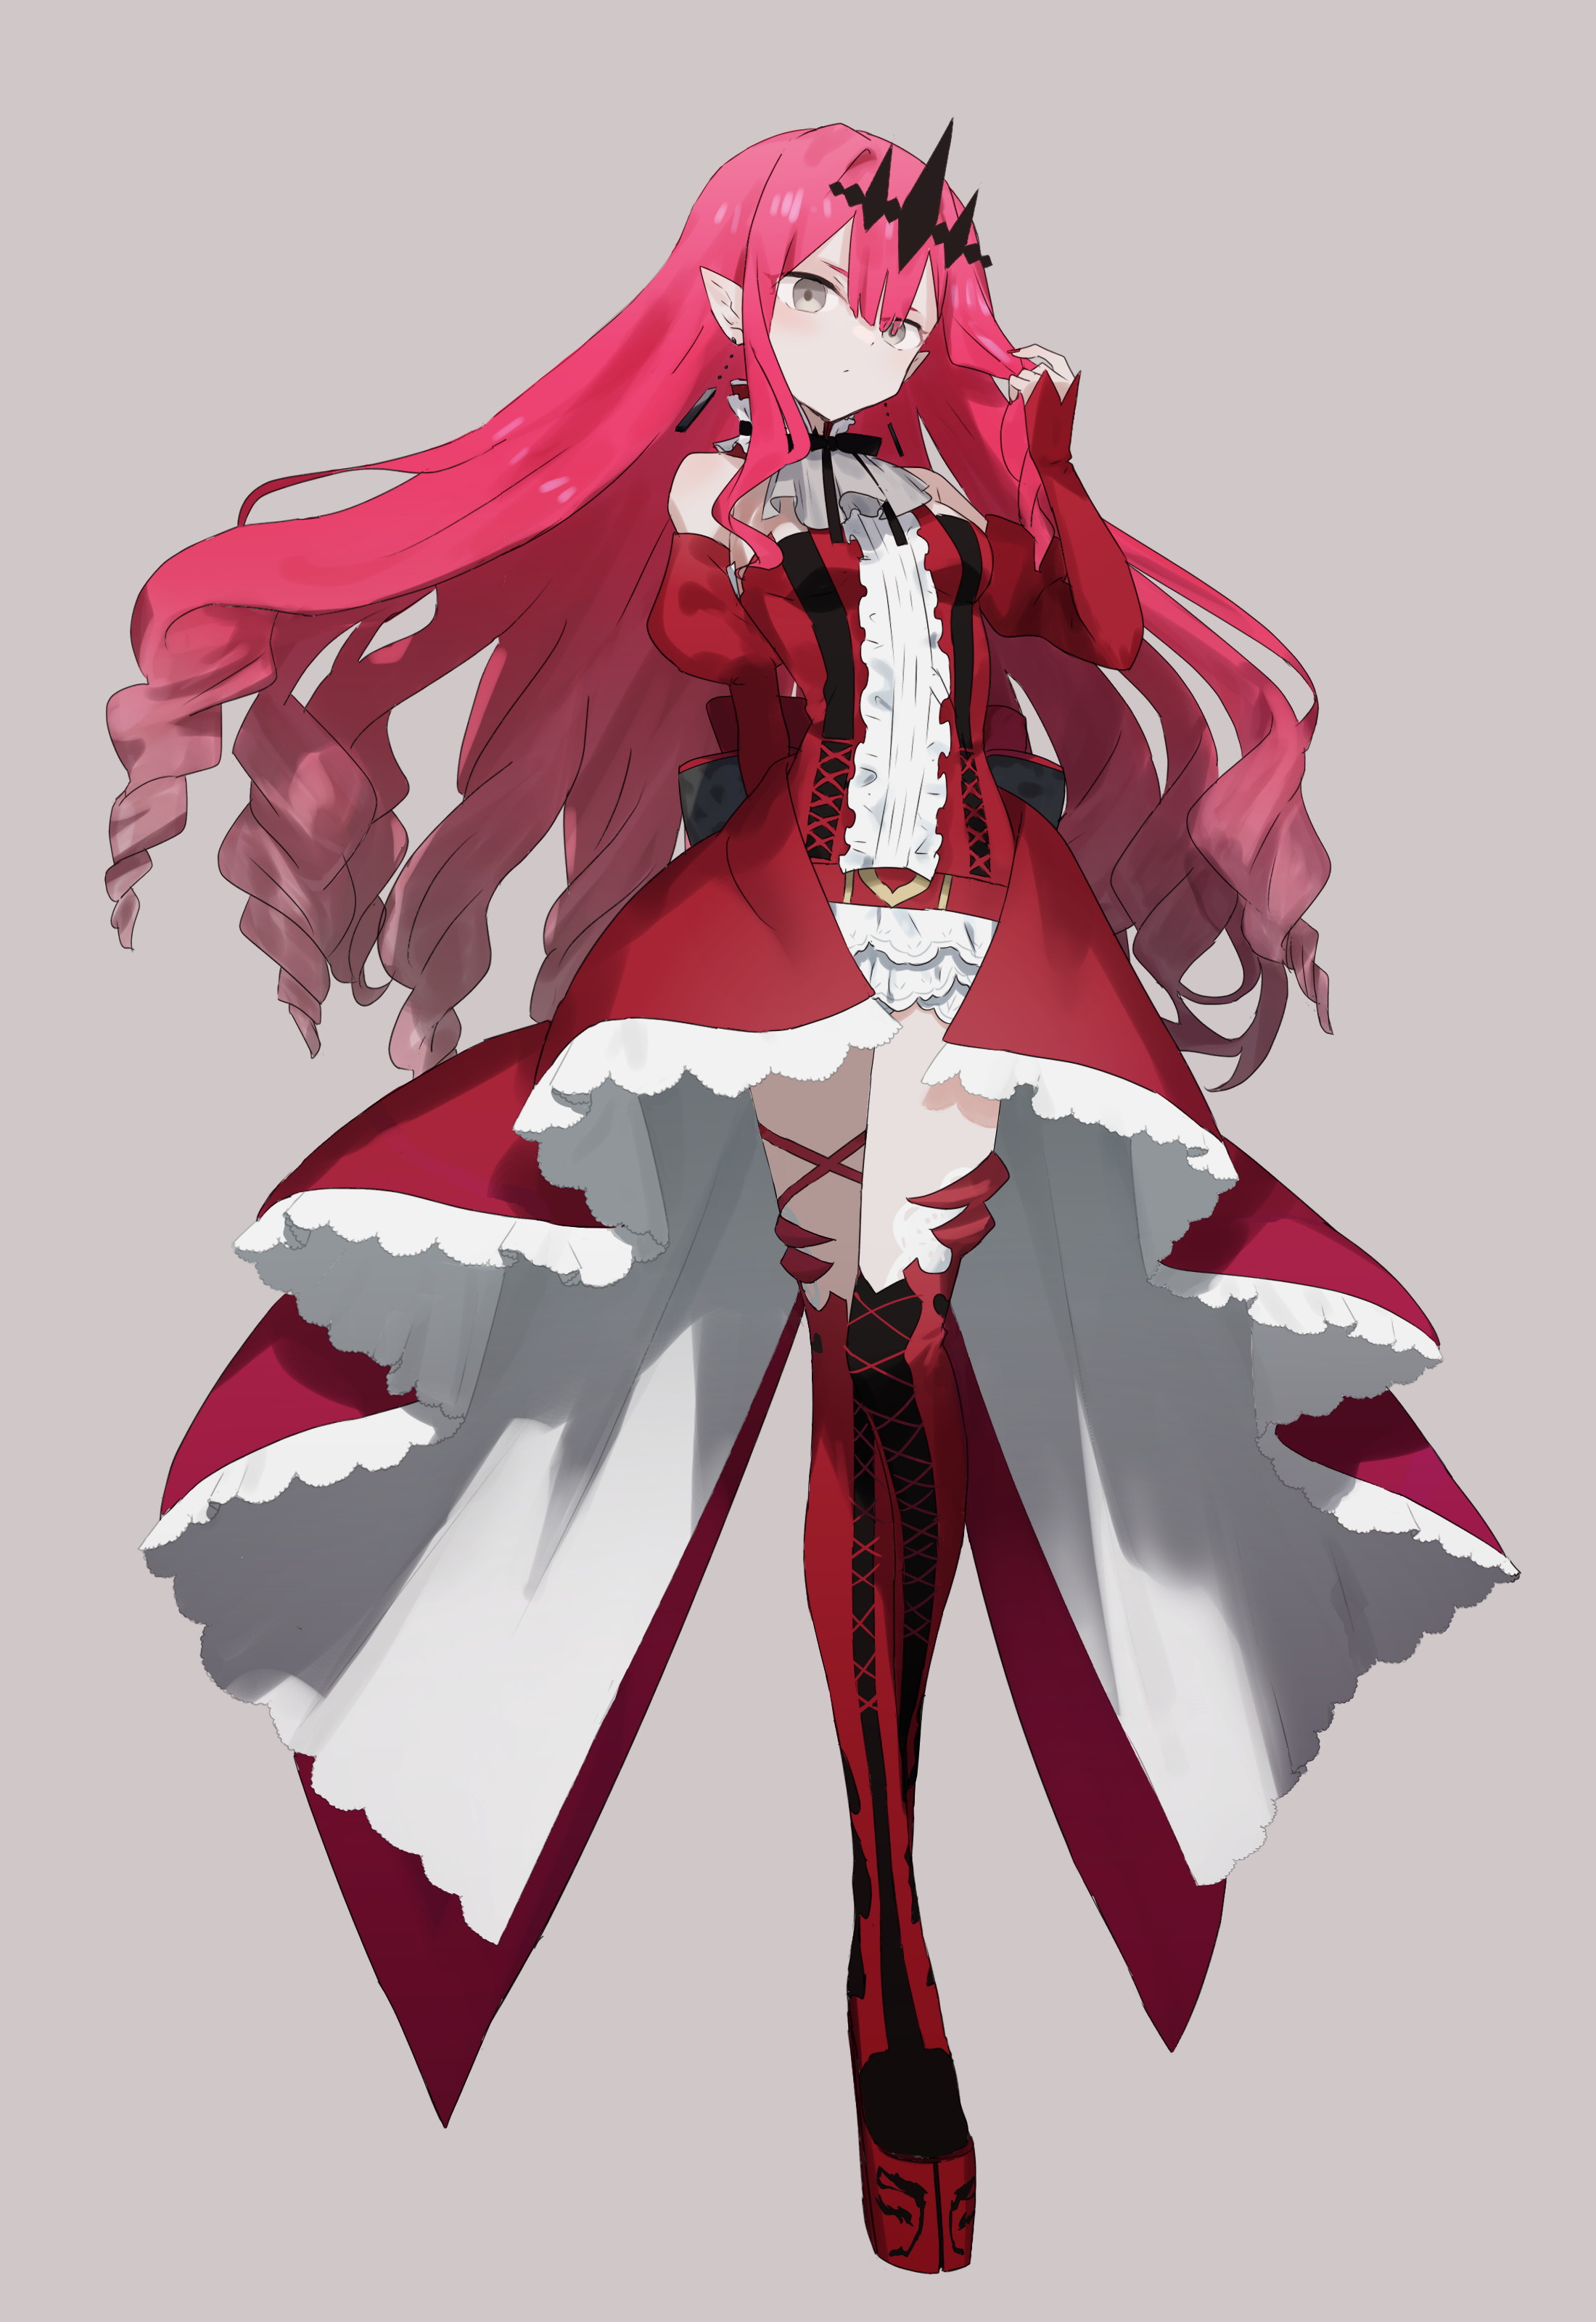 Anime Anime Girls Fate Grand Order Fate Series Baobhan Sith Long Hair Redhead Artwork Digital Art Fa 2200x3200